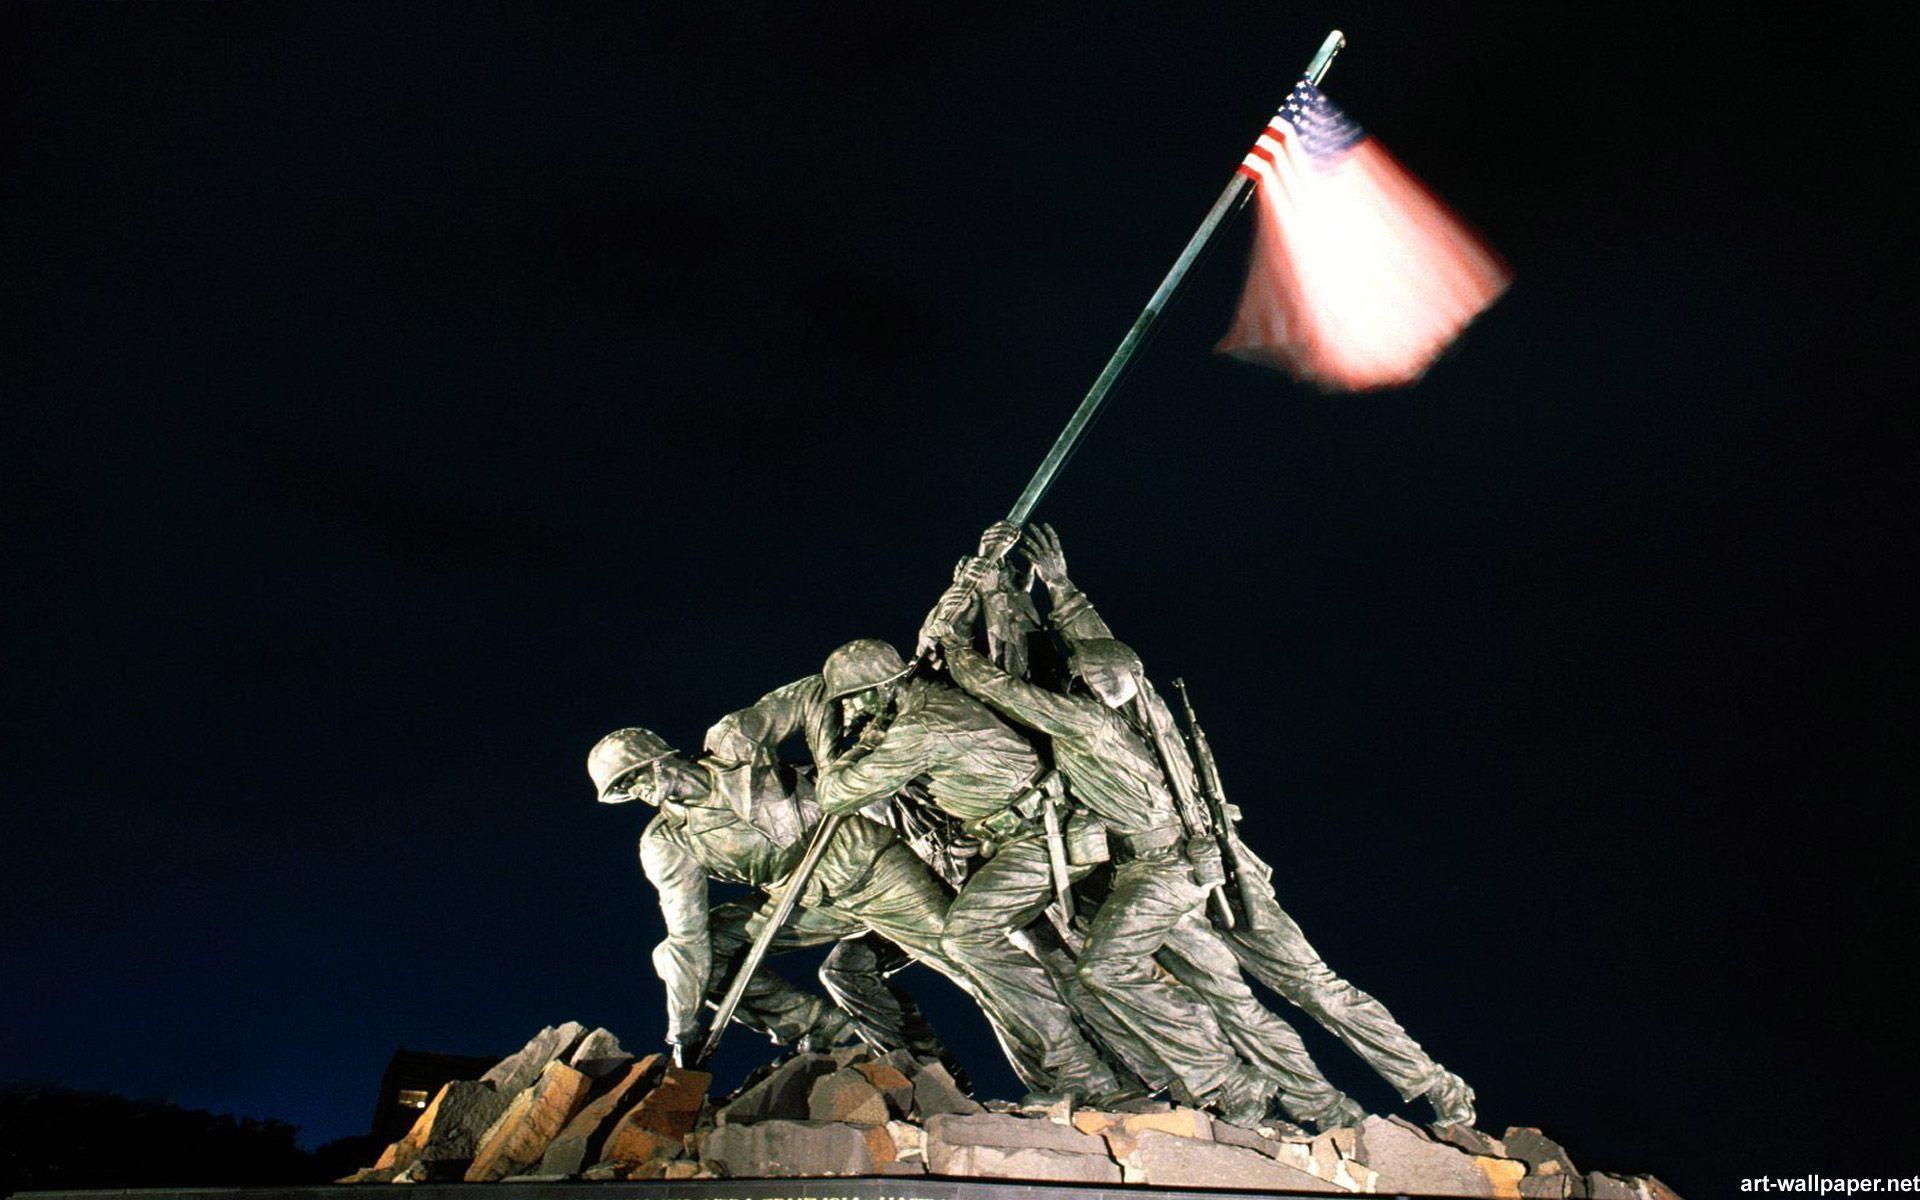 Iwo Jima wallpaper